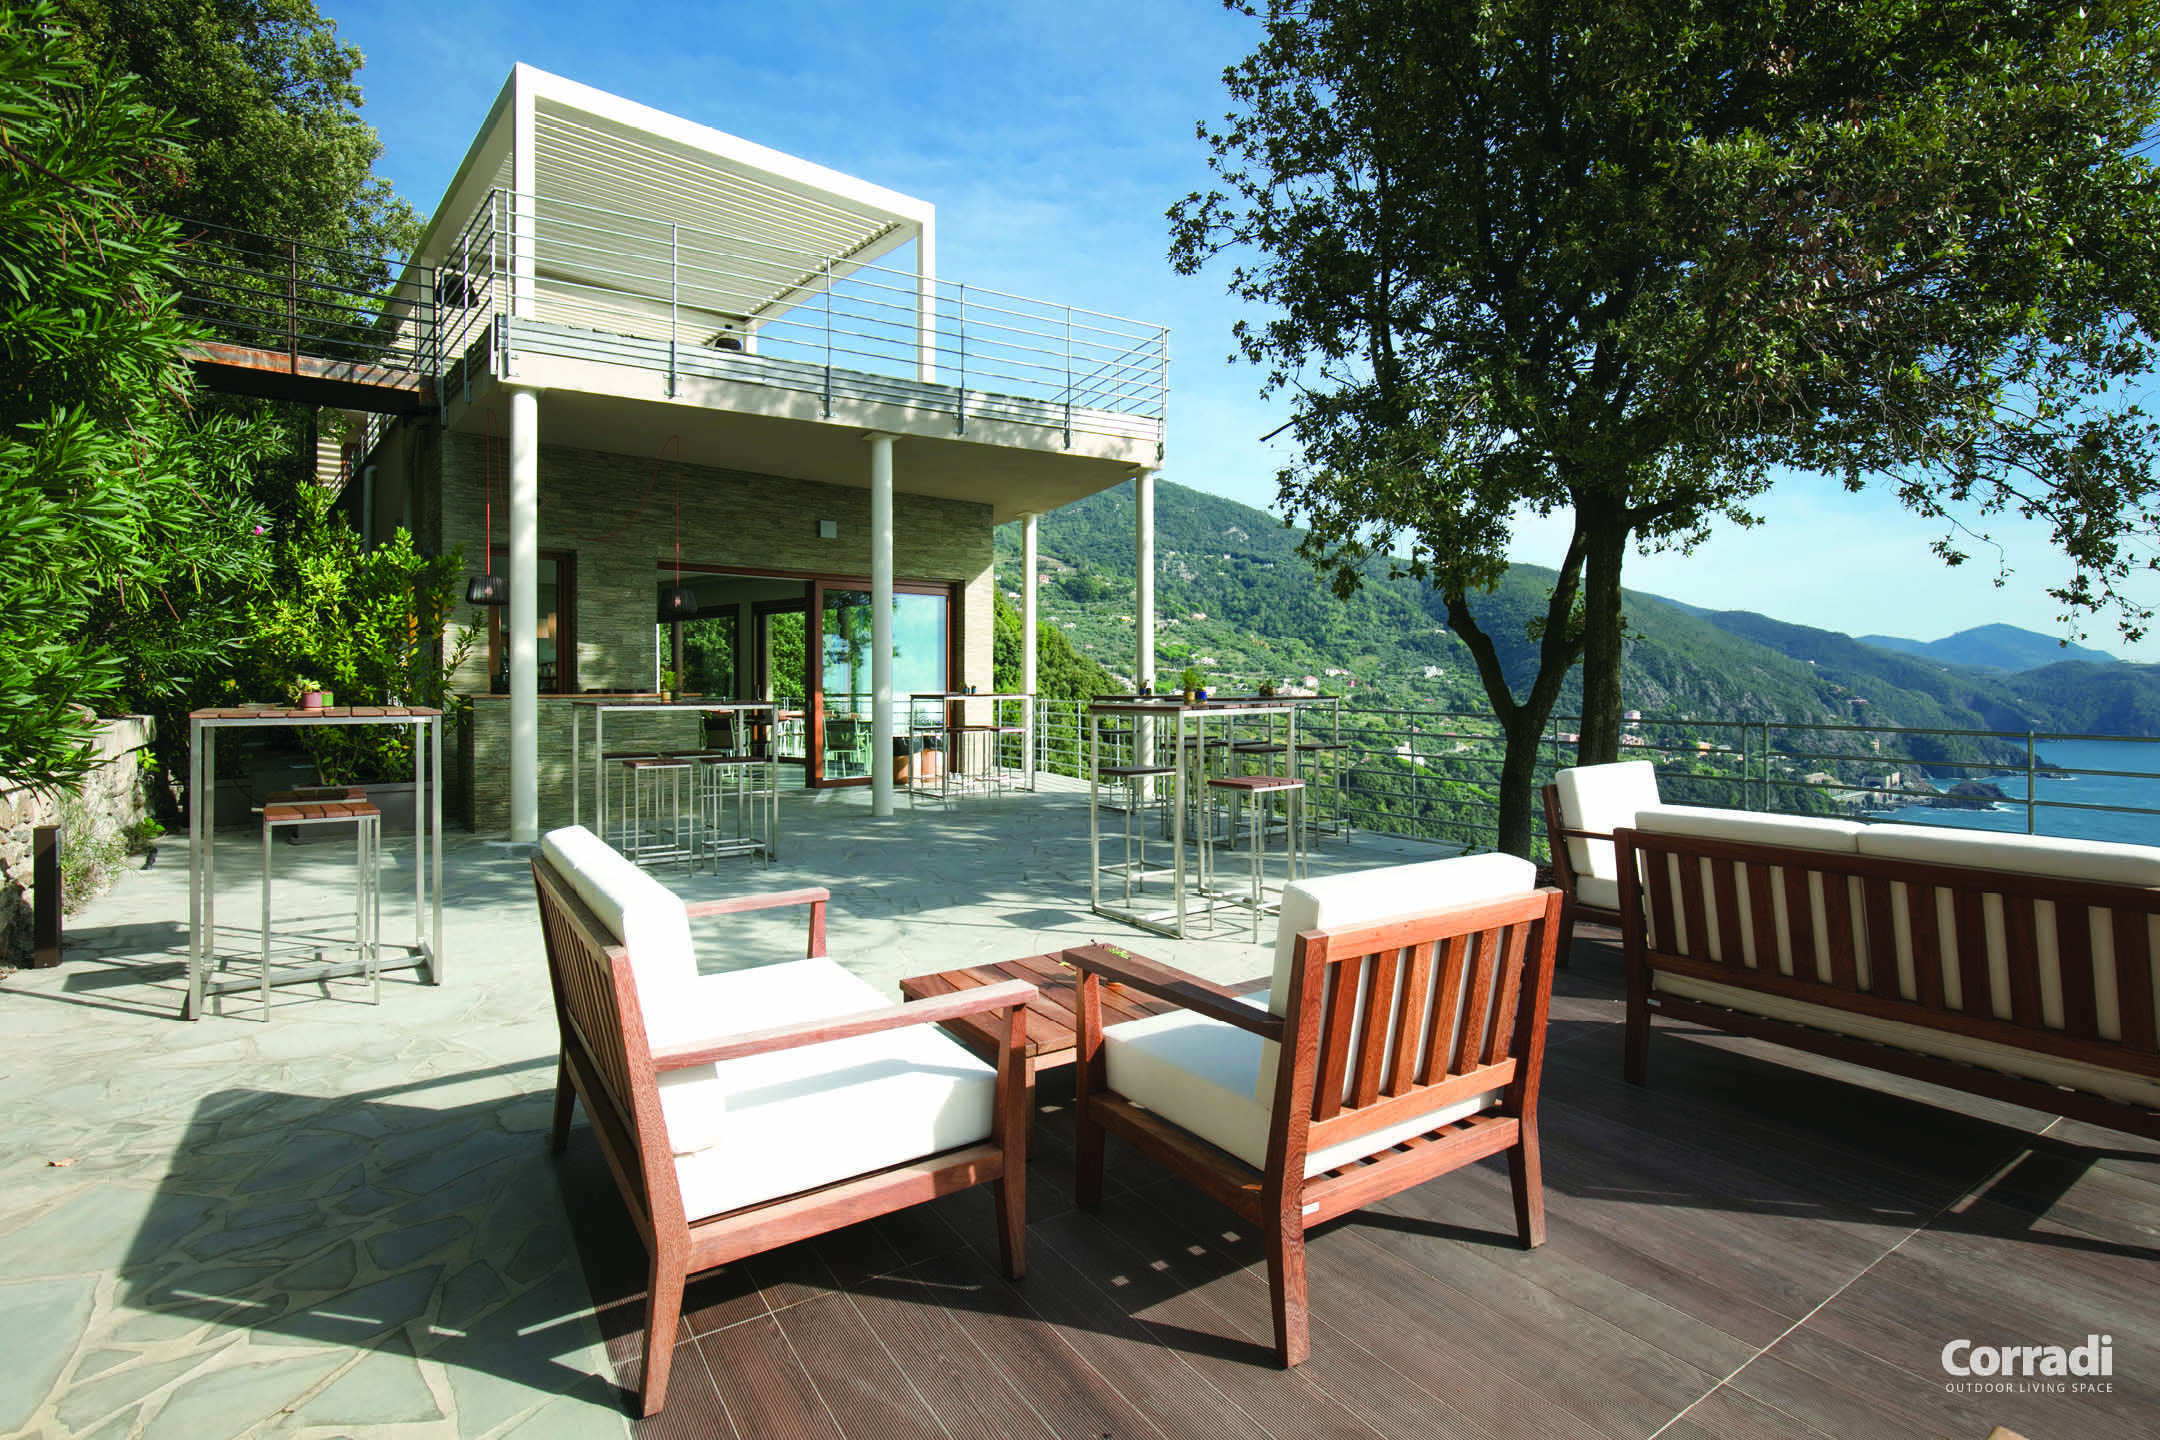 Pergola bioclimatique pour une terrasse surélevée qui offre une vue sur le lac et la vallée